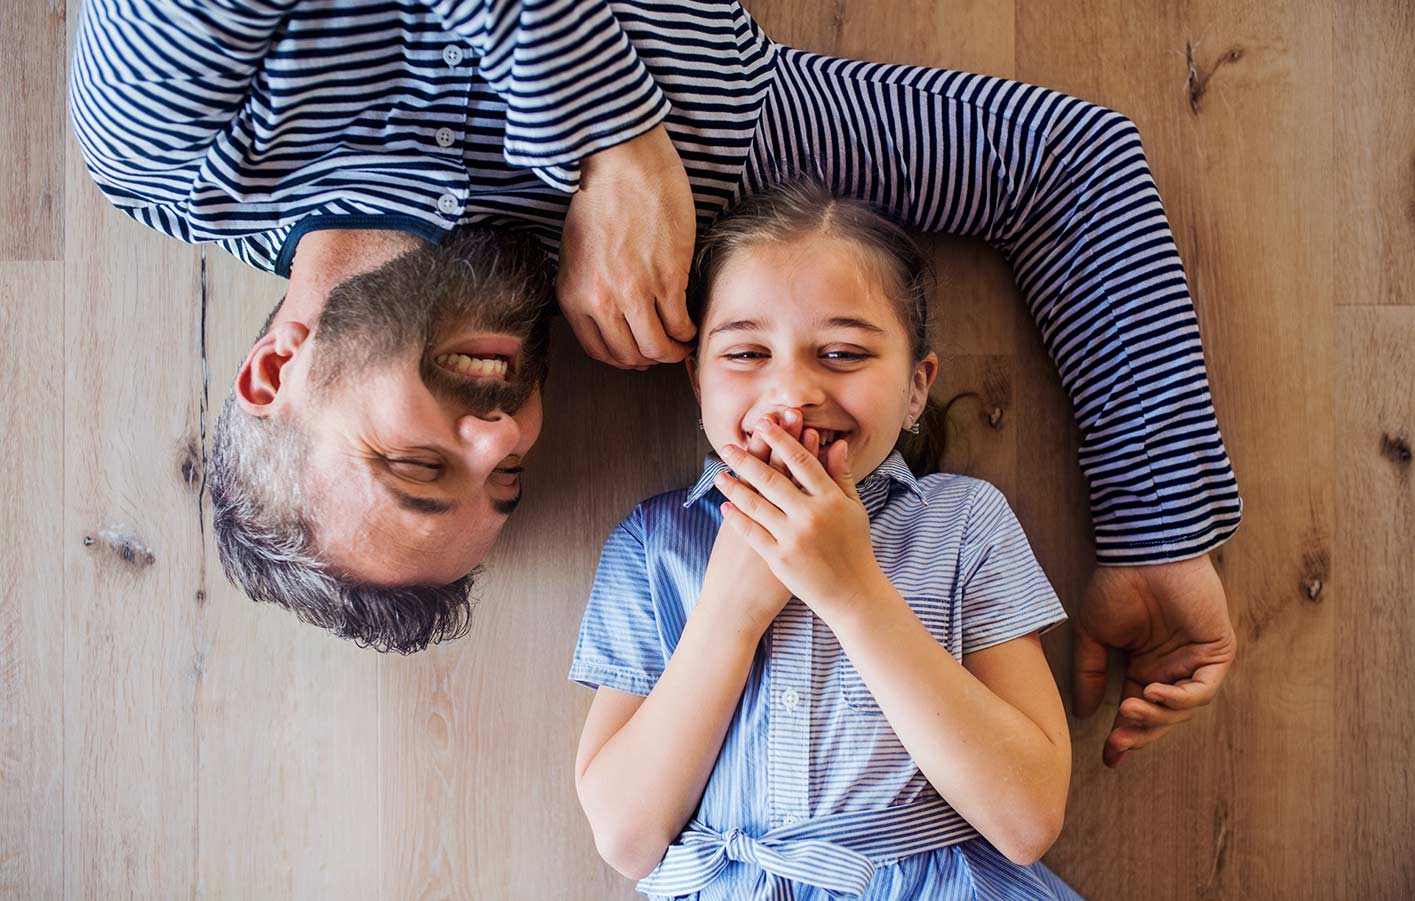 Papa und Tochter lachend auf dem Holzboden